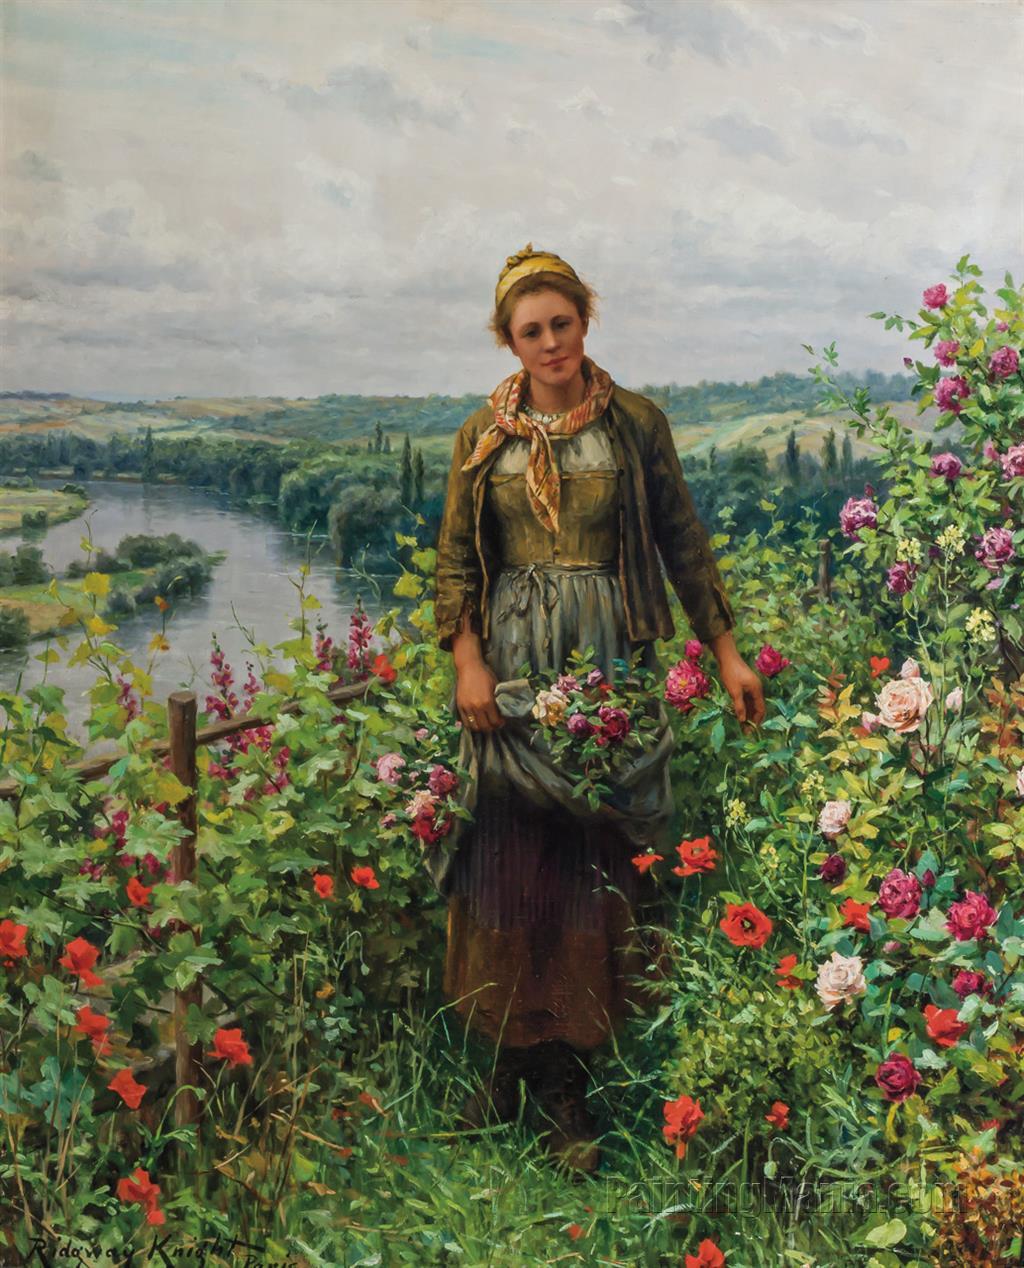 A Maid in Her Garden